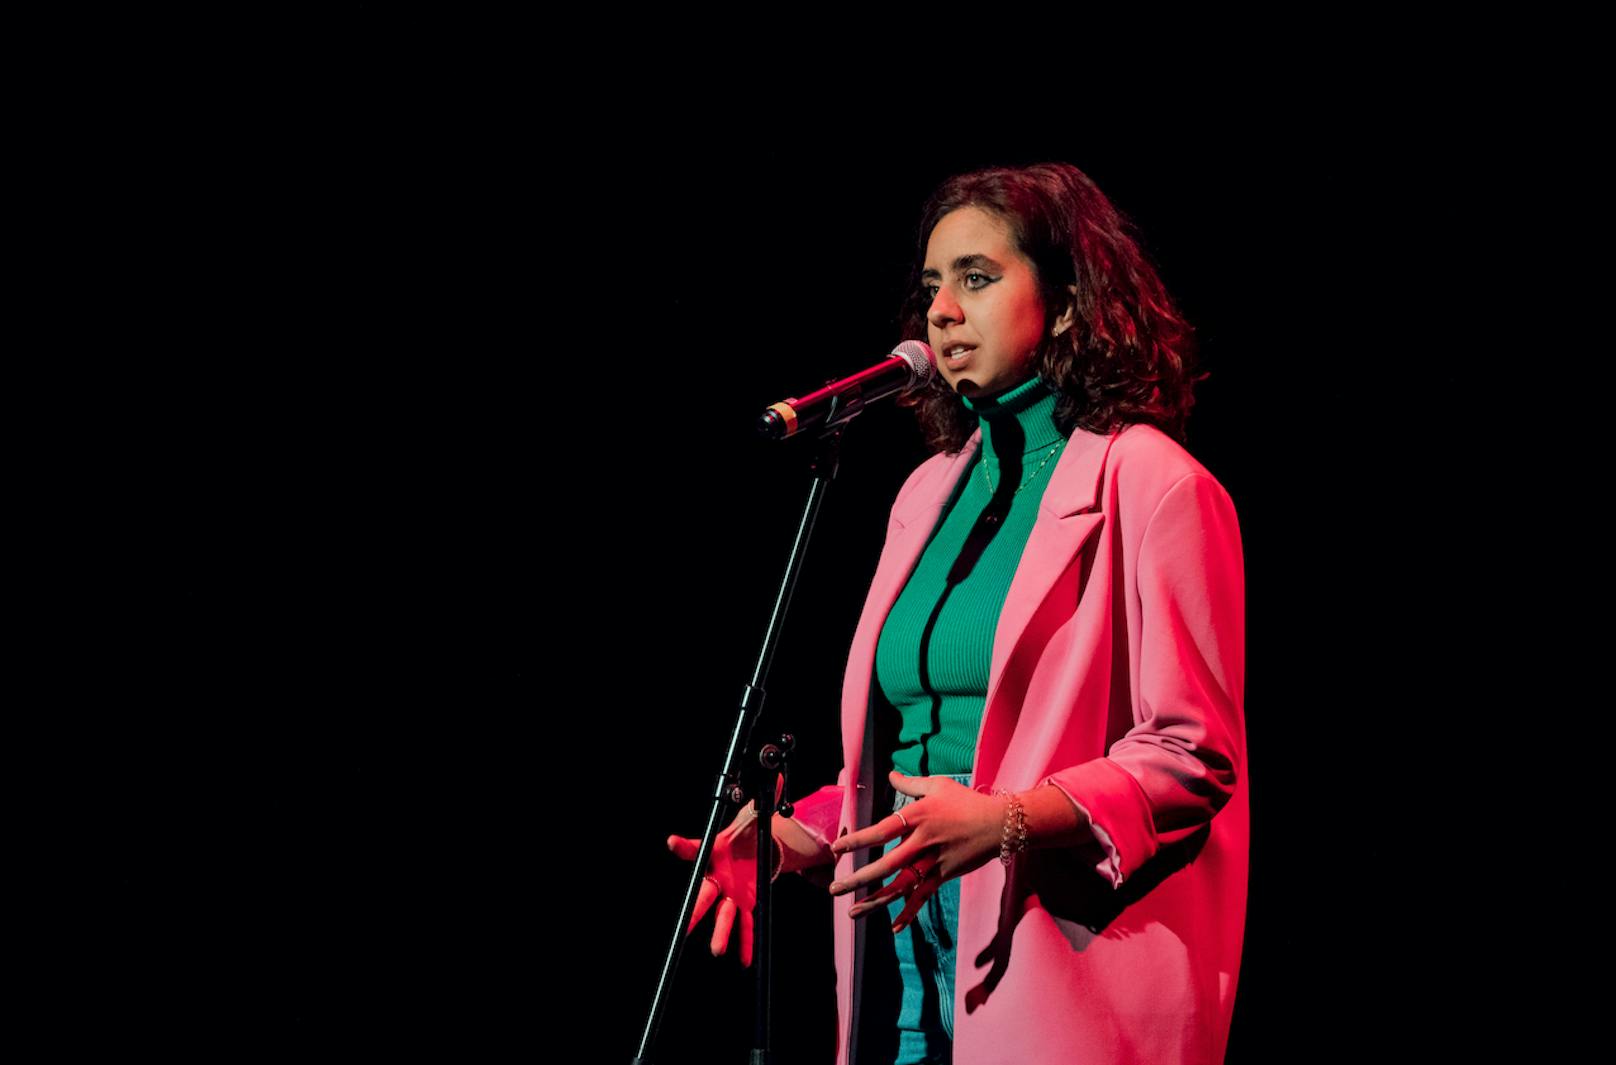 Hafia Khawaja ist Featured Poet in der Einzel-Vorrunde 10 im Schauspielhaus beim Poetry Slam "Slam22". Sie ist unter den Auftretenden außerhalb der Wertung und des Wettbewerbs.